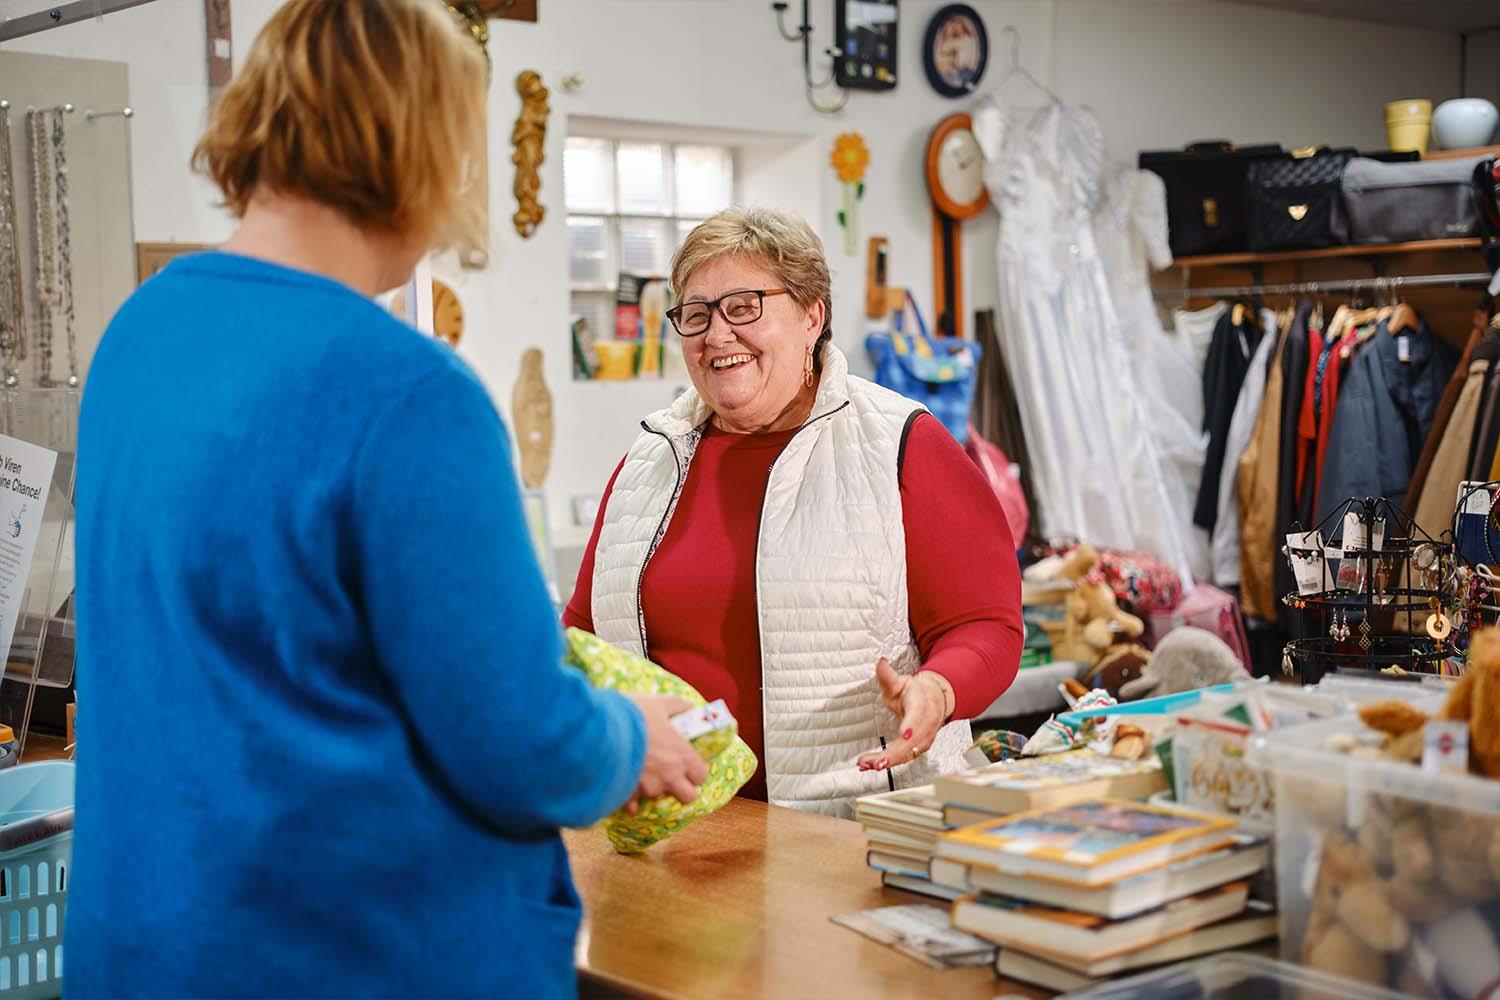 Ältere Dame mit kurzen blonden Haaren und Brille steht hinter einer Ladentheke und lächelt einer Frau zu.